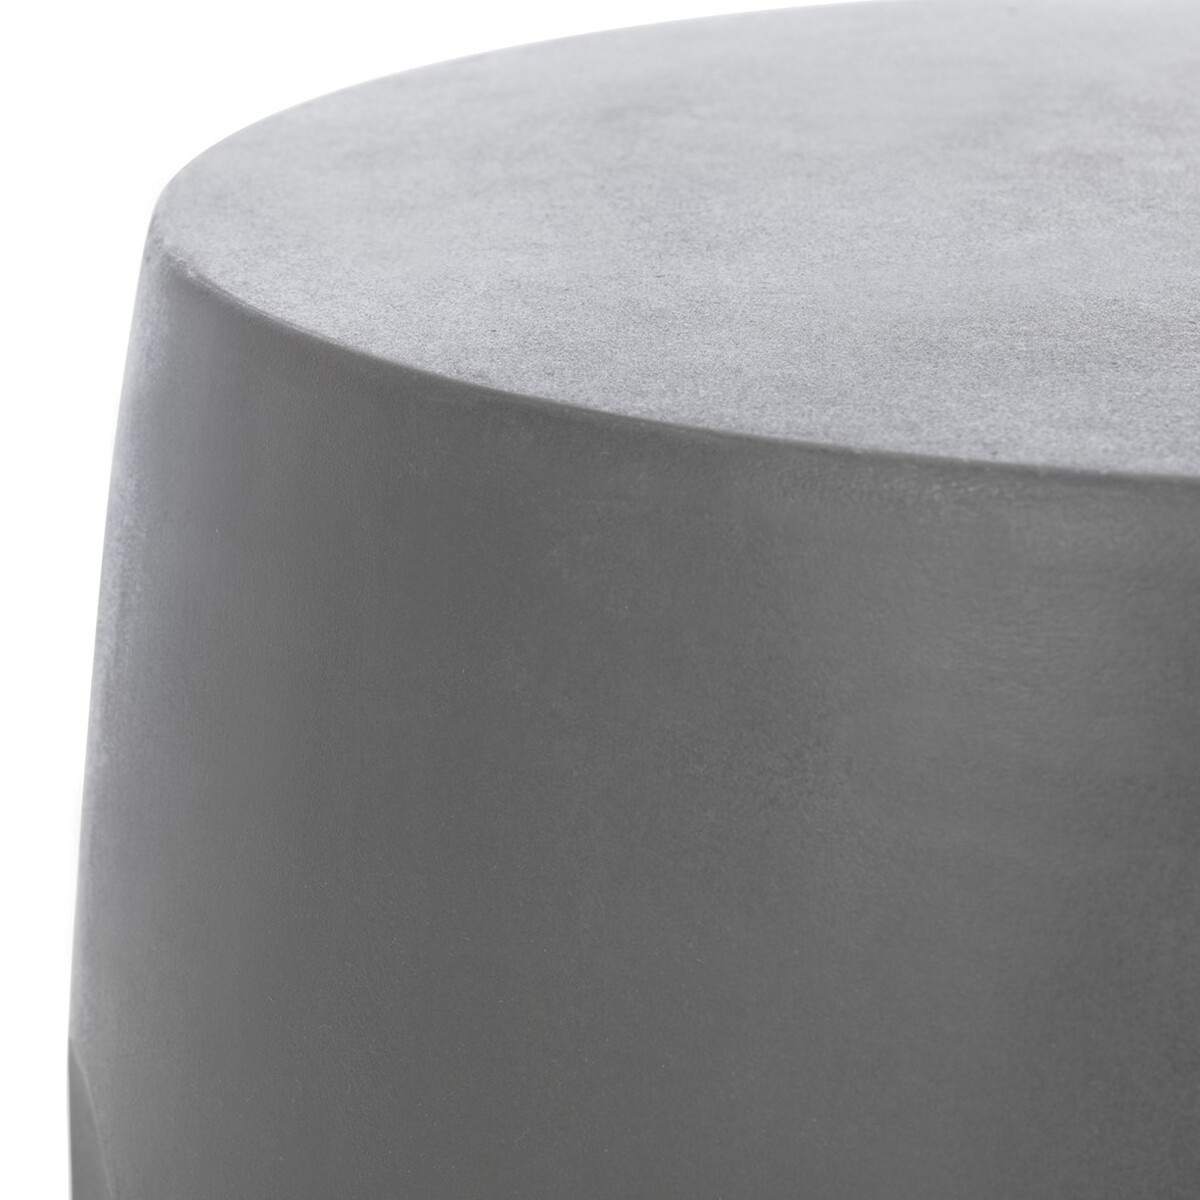 Zuri Indoor/Outdoor Modern Concrete Round 17.7-Inch H Accent Table - Dark Grey - Arlo Home - Image 4